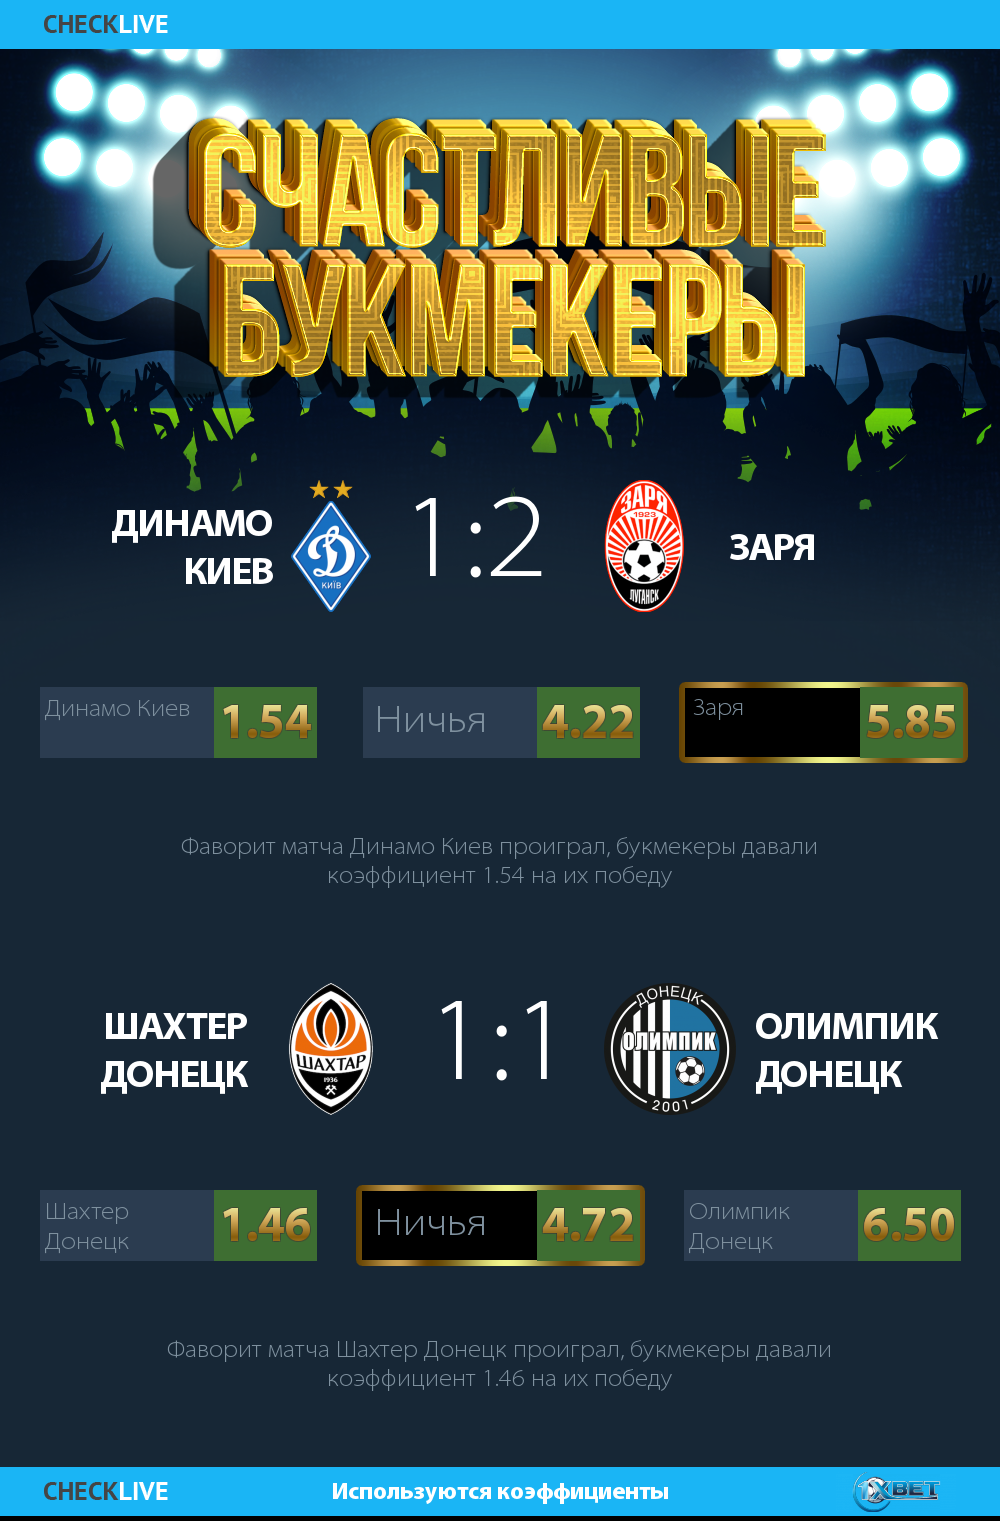 Счастливые букмекеры  инфографика Чемпионат Украины. 21 05 2017